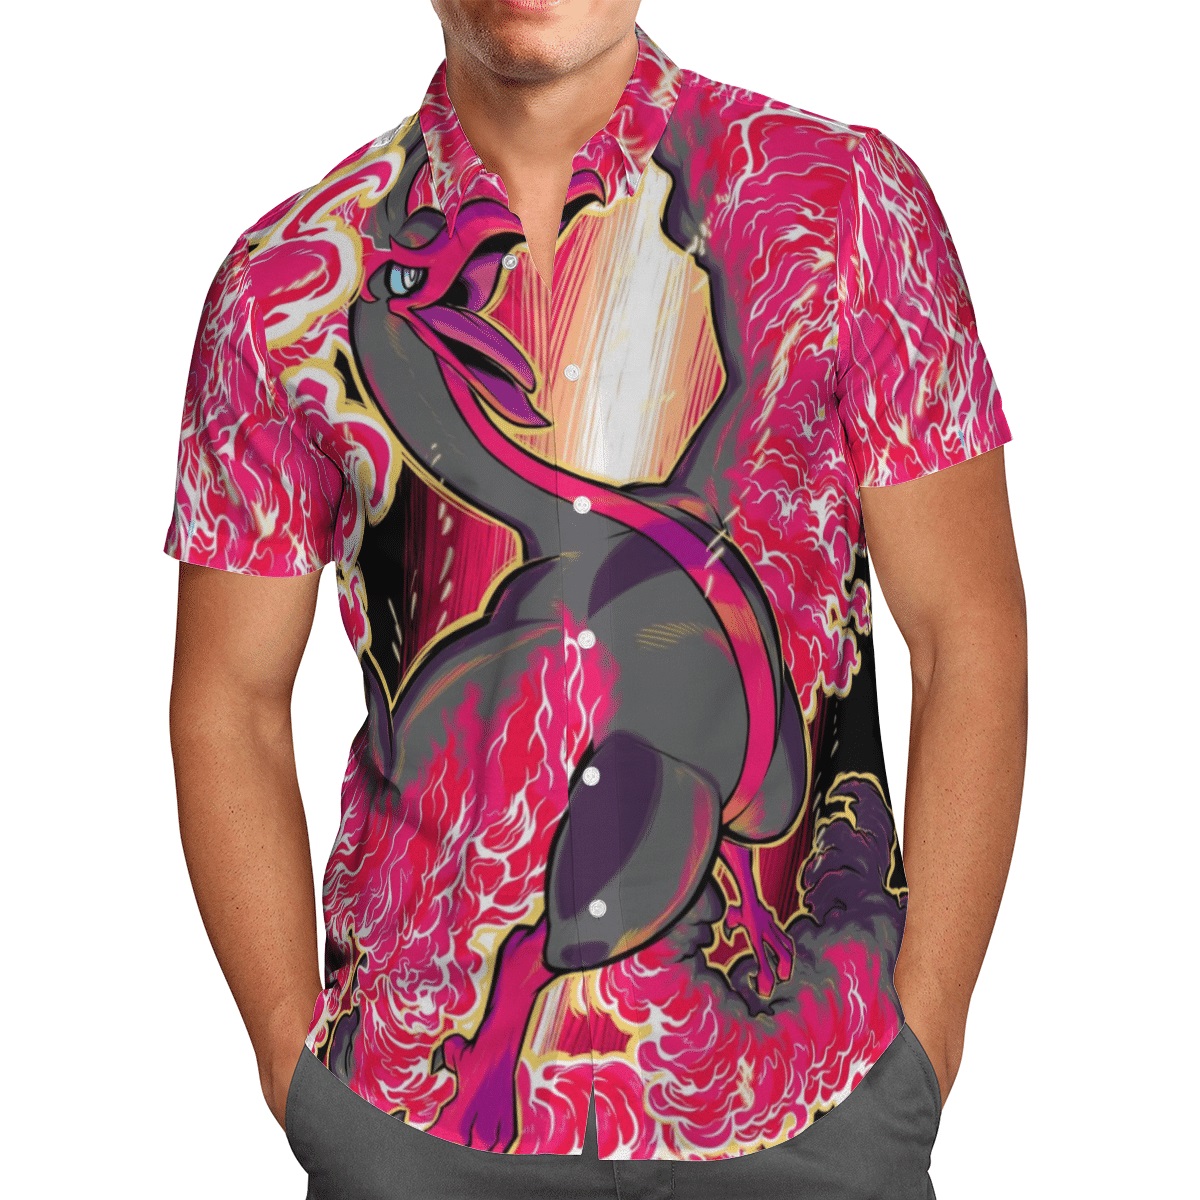 Ho-oh pokemon hawaiian shirt - Picture 1